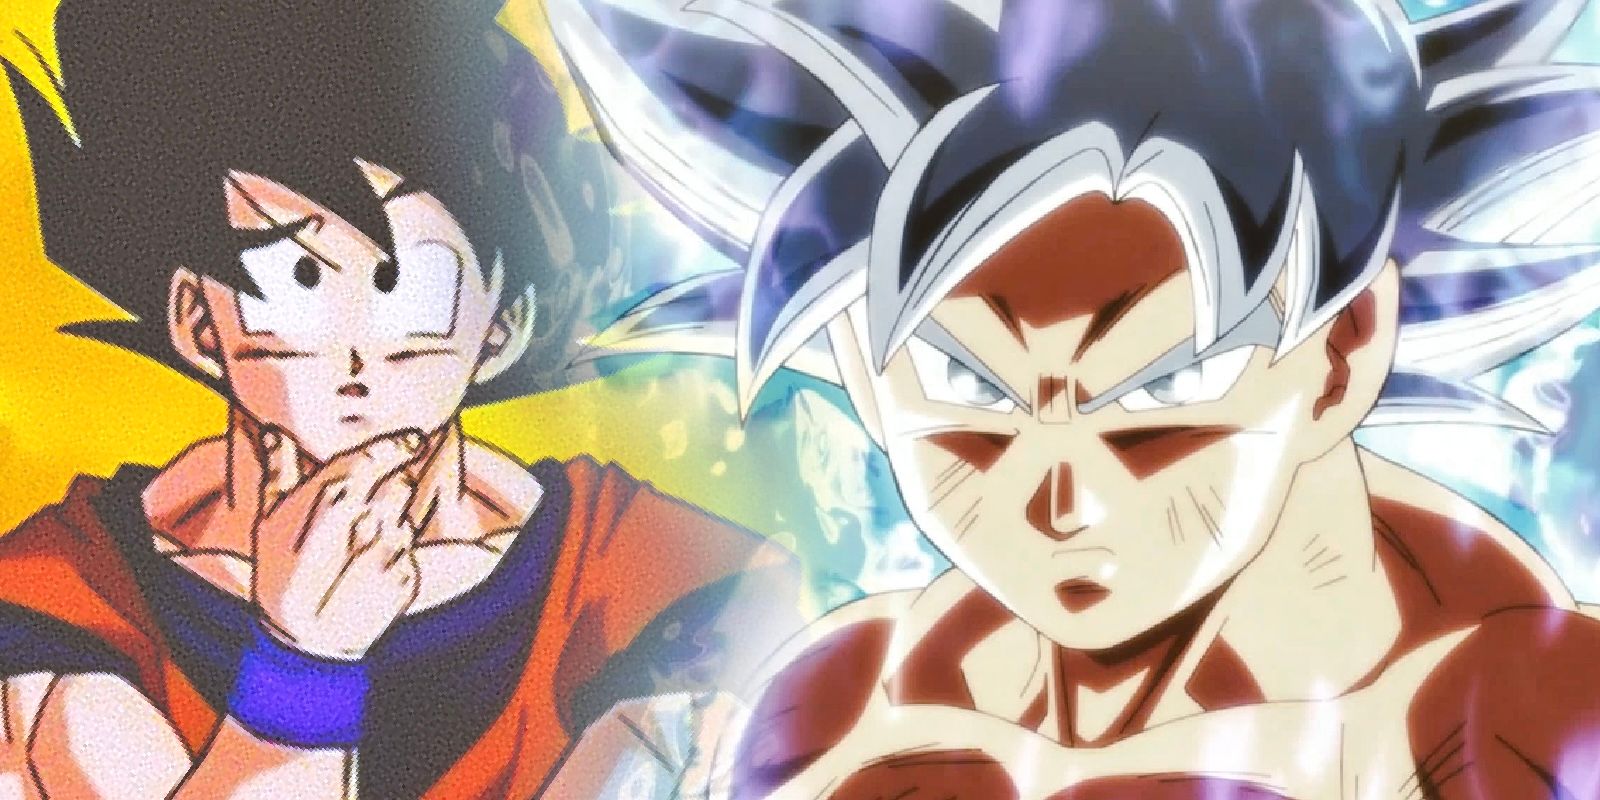 REACTING TO Dragonball AF - Goku Turns Into Super Saiyan 5! SUPER SAIYAN 5  or ULTRA INSTINCT?